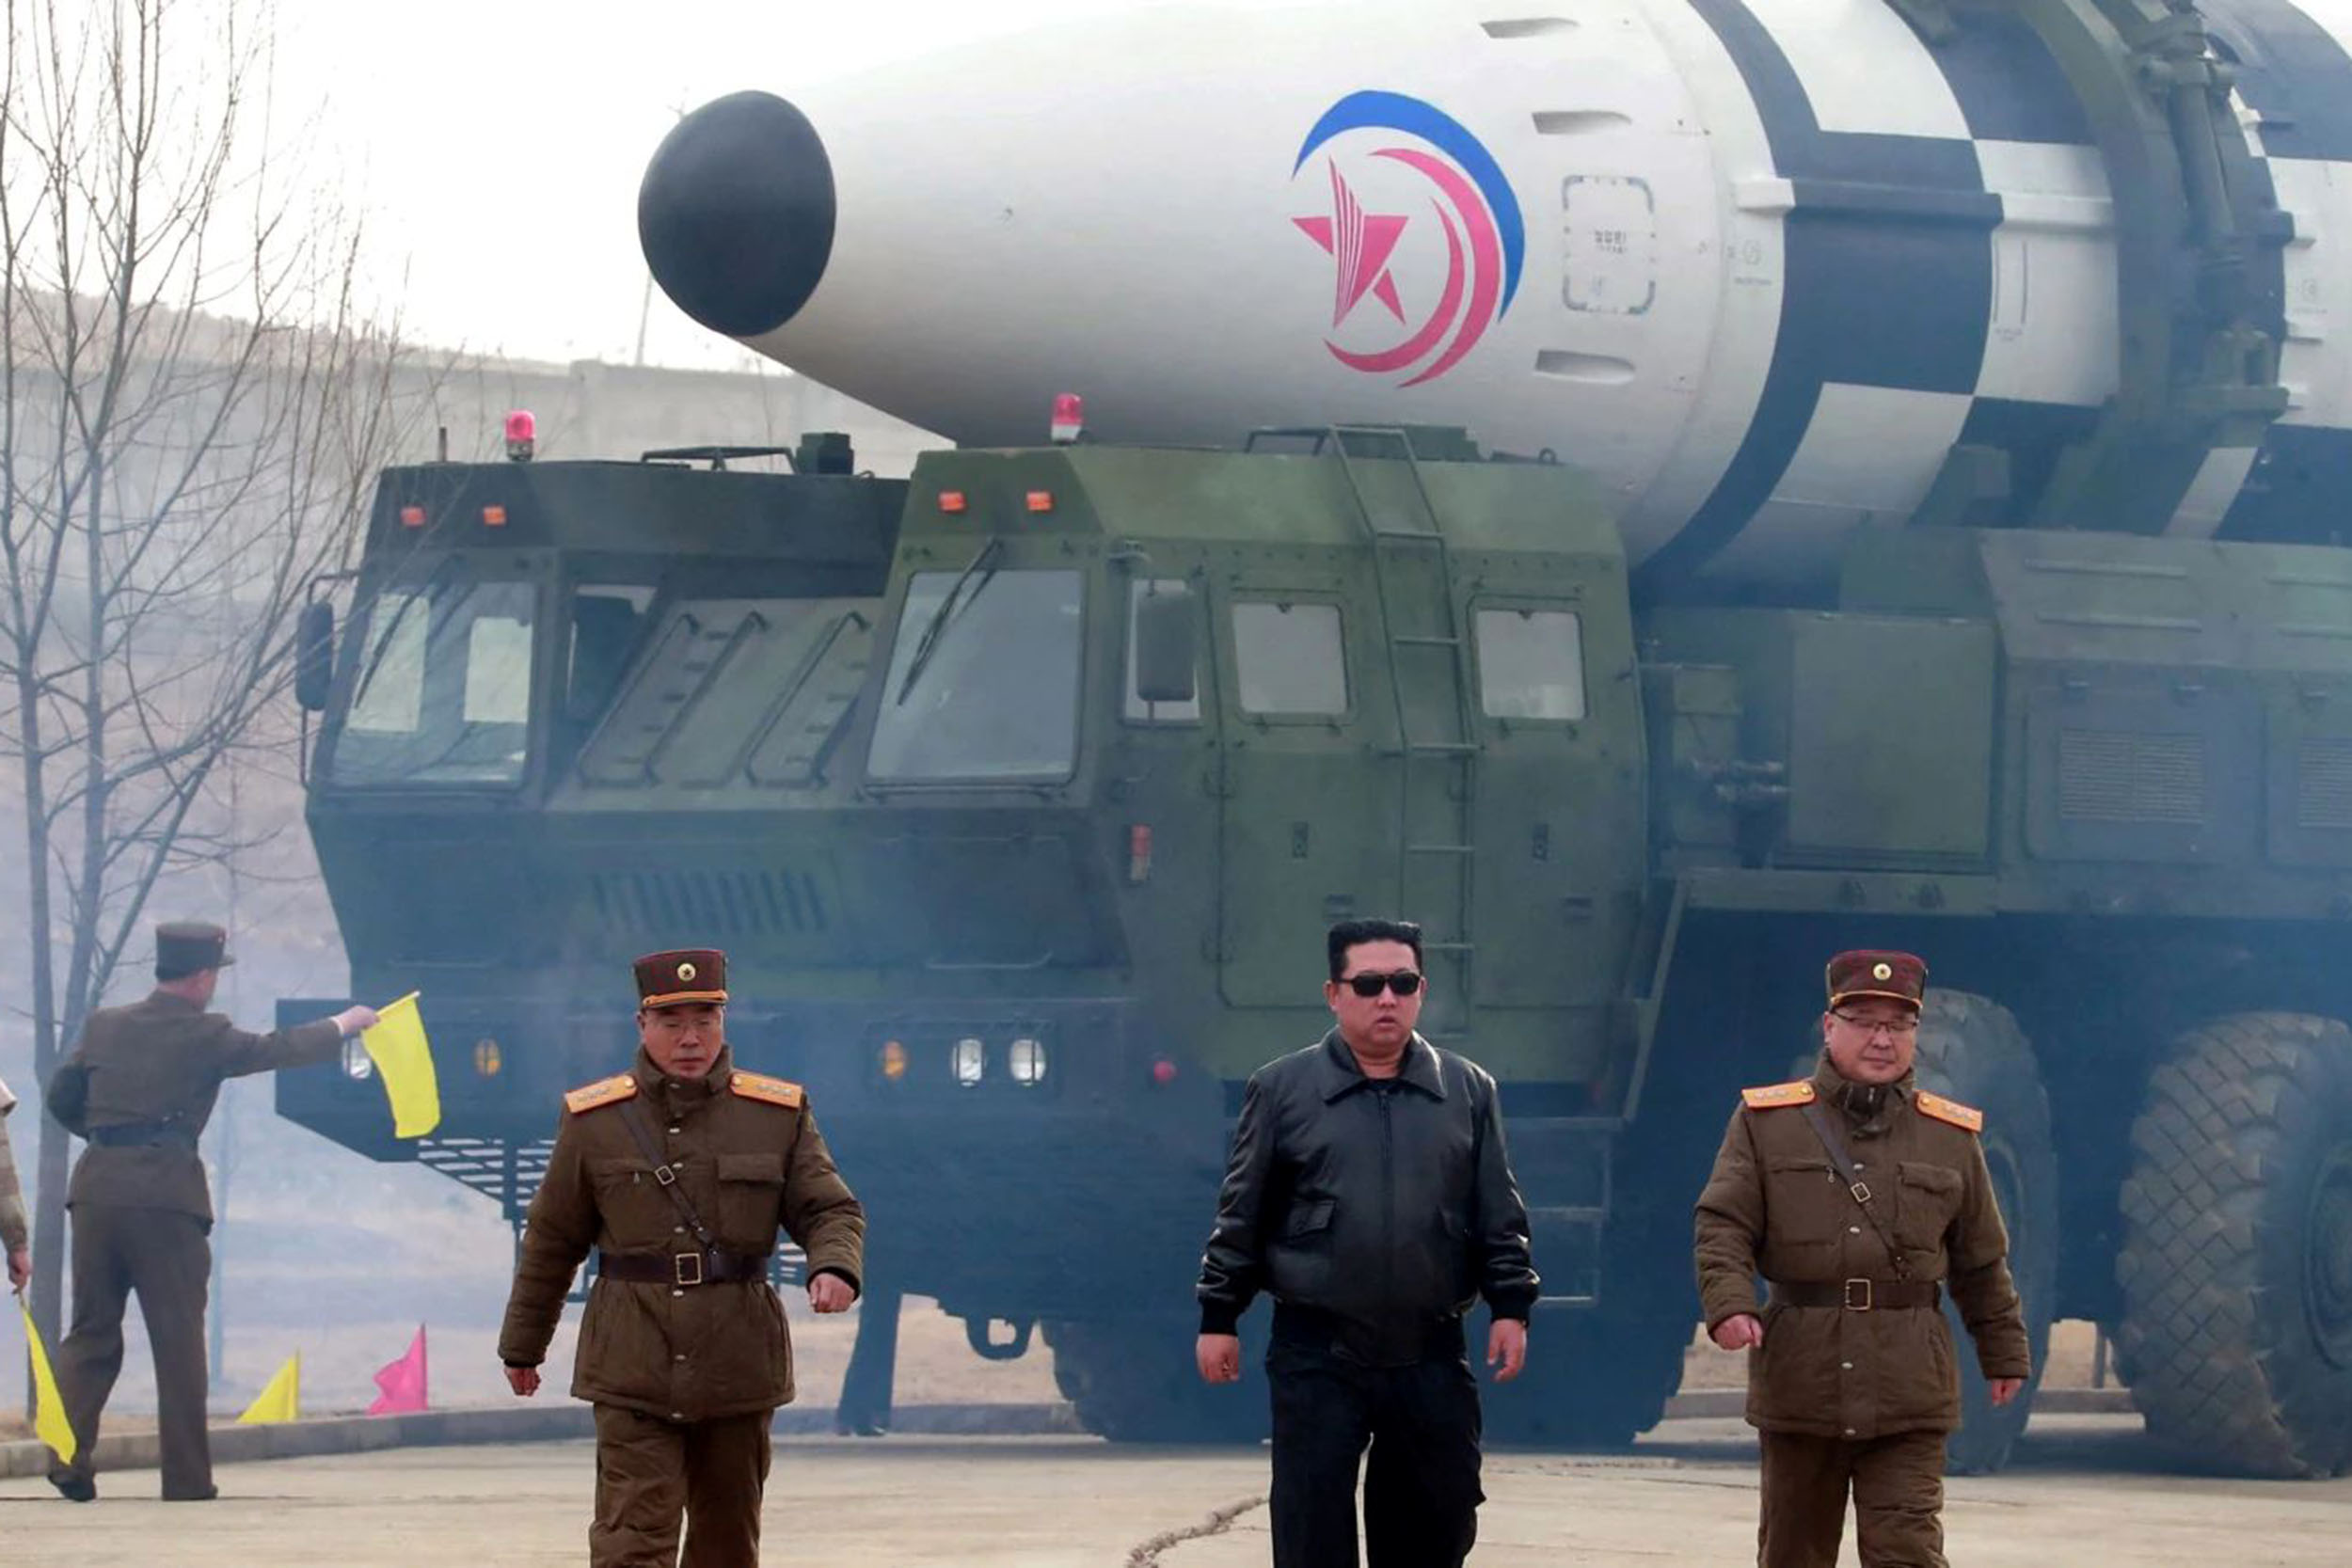 Kim Jong-un amenință Coreea de Sud şi SUA